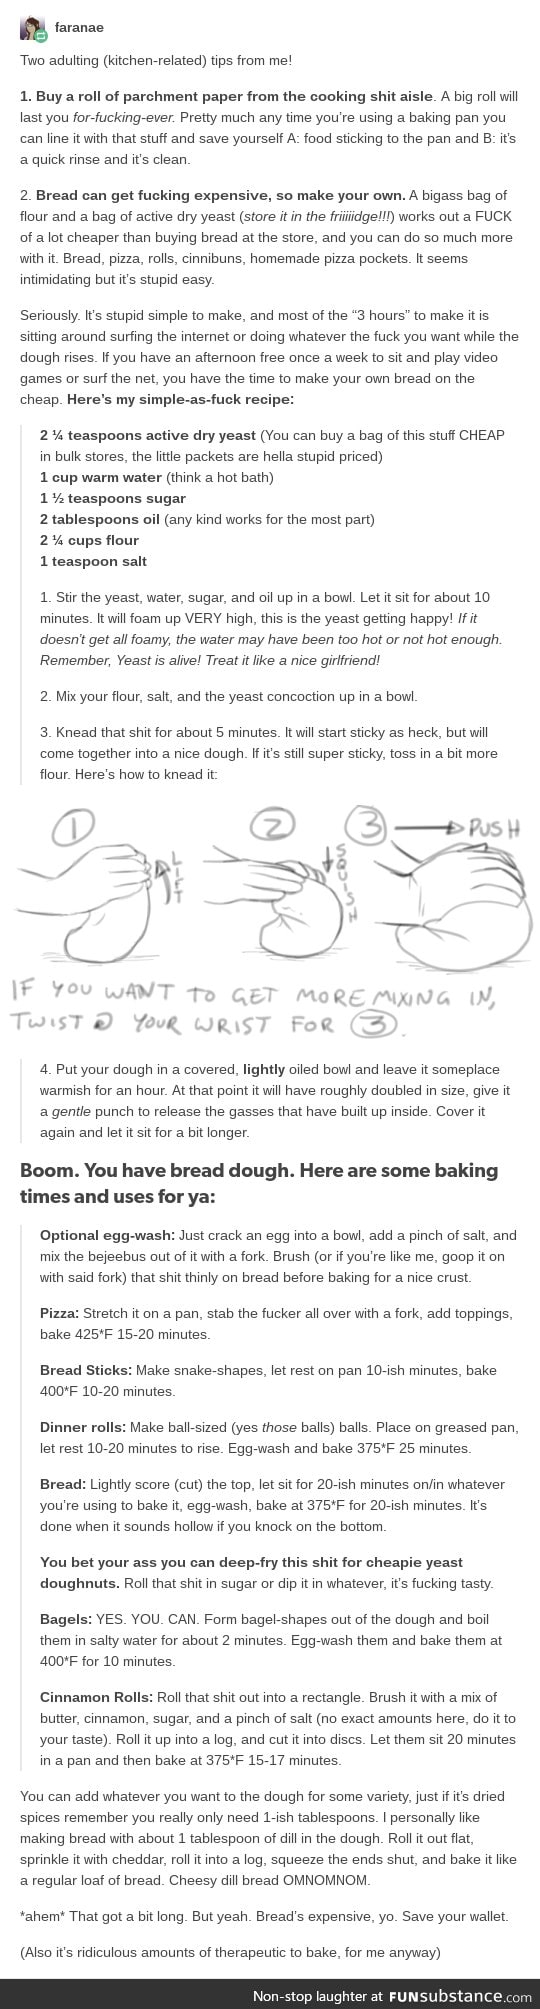 tips regarding bread